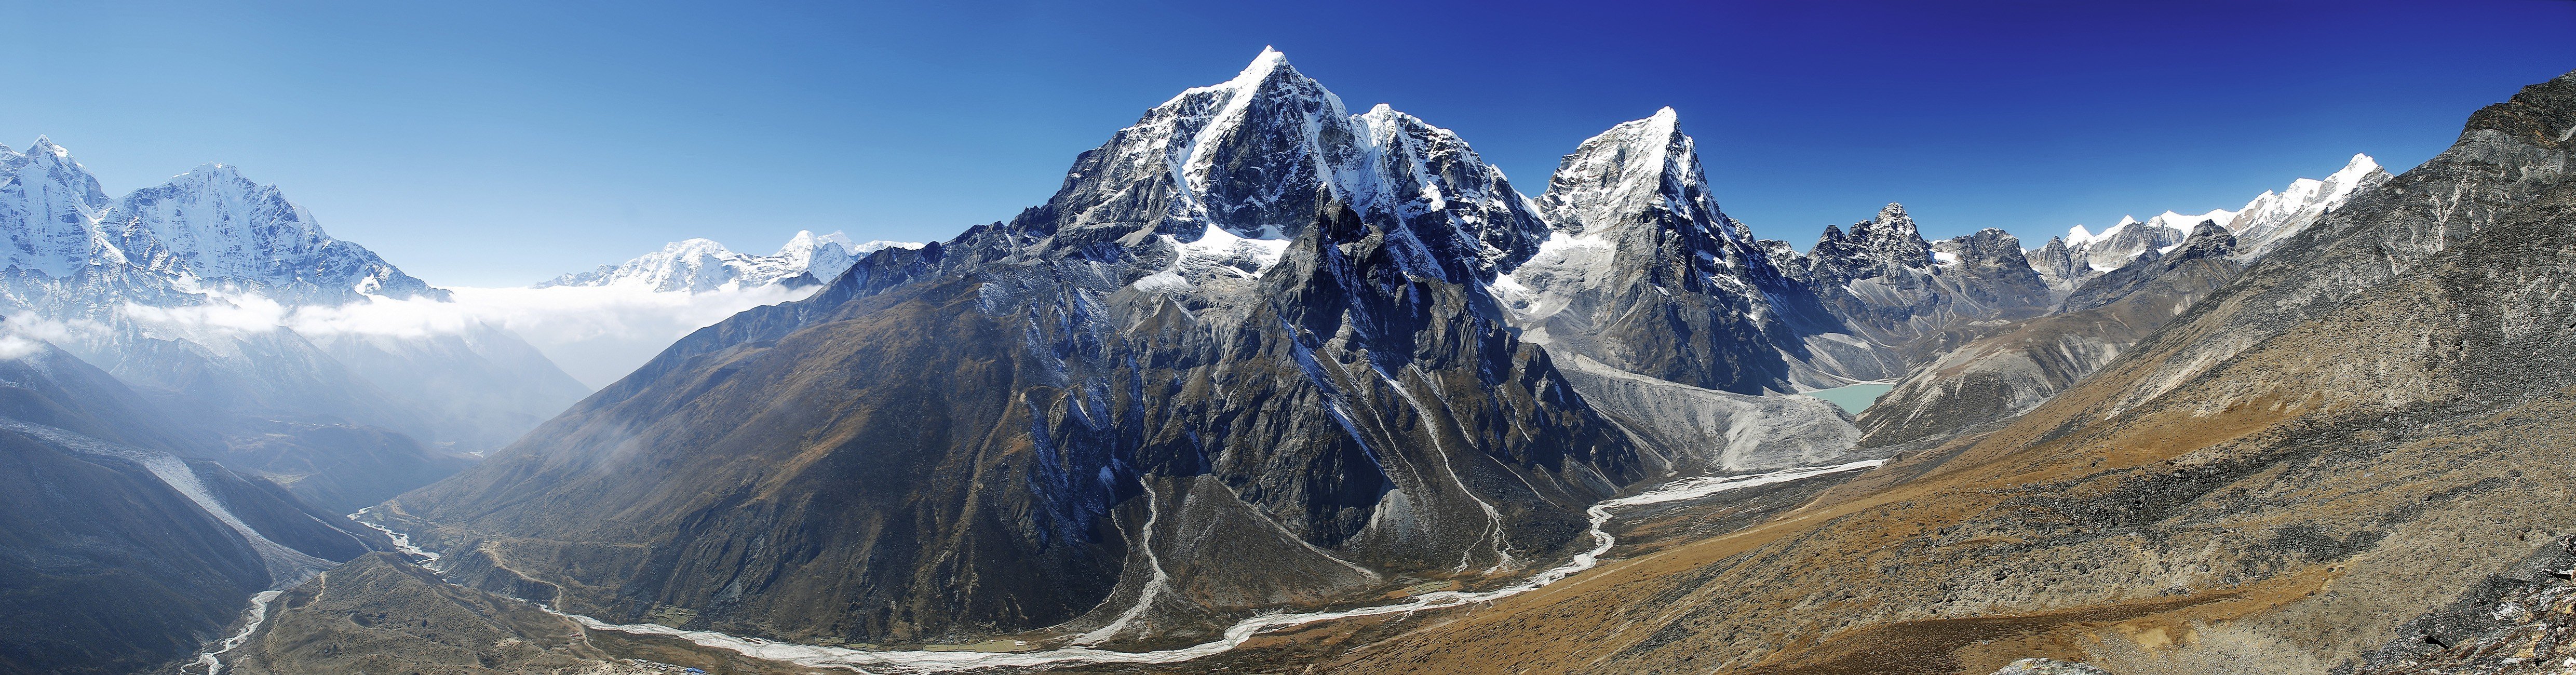 panoramas, Mountain Wallpaper